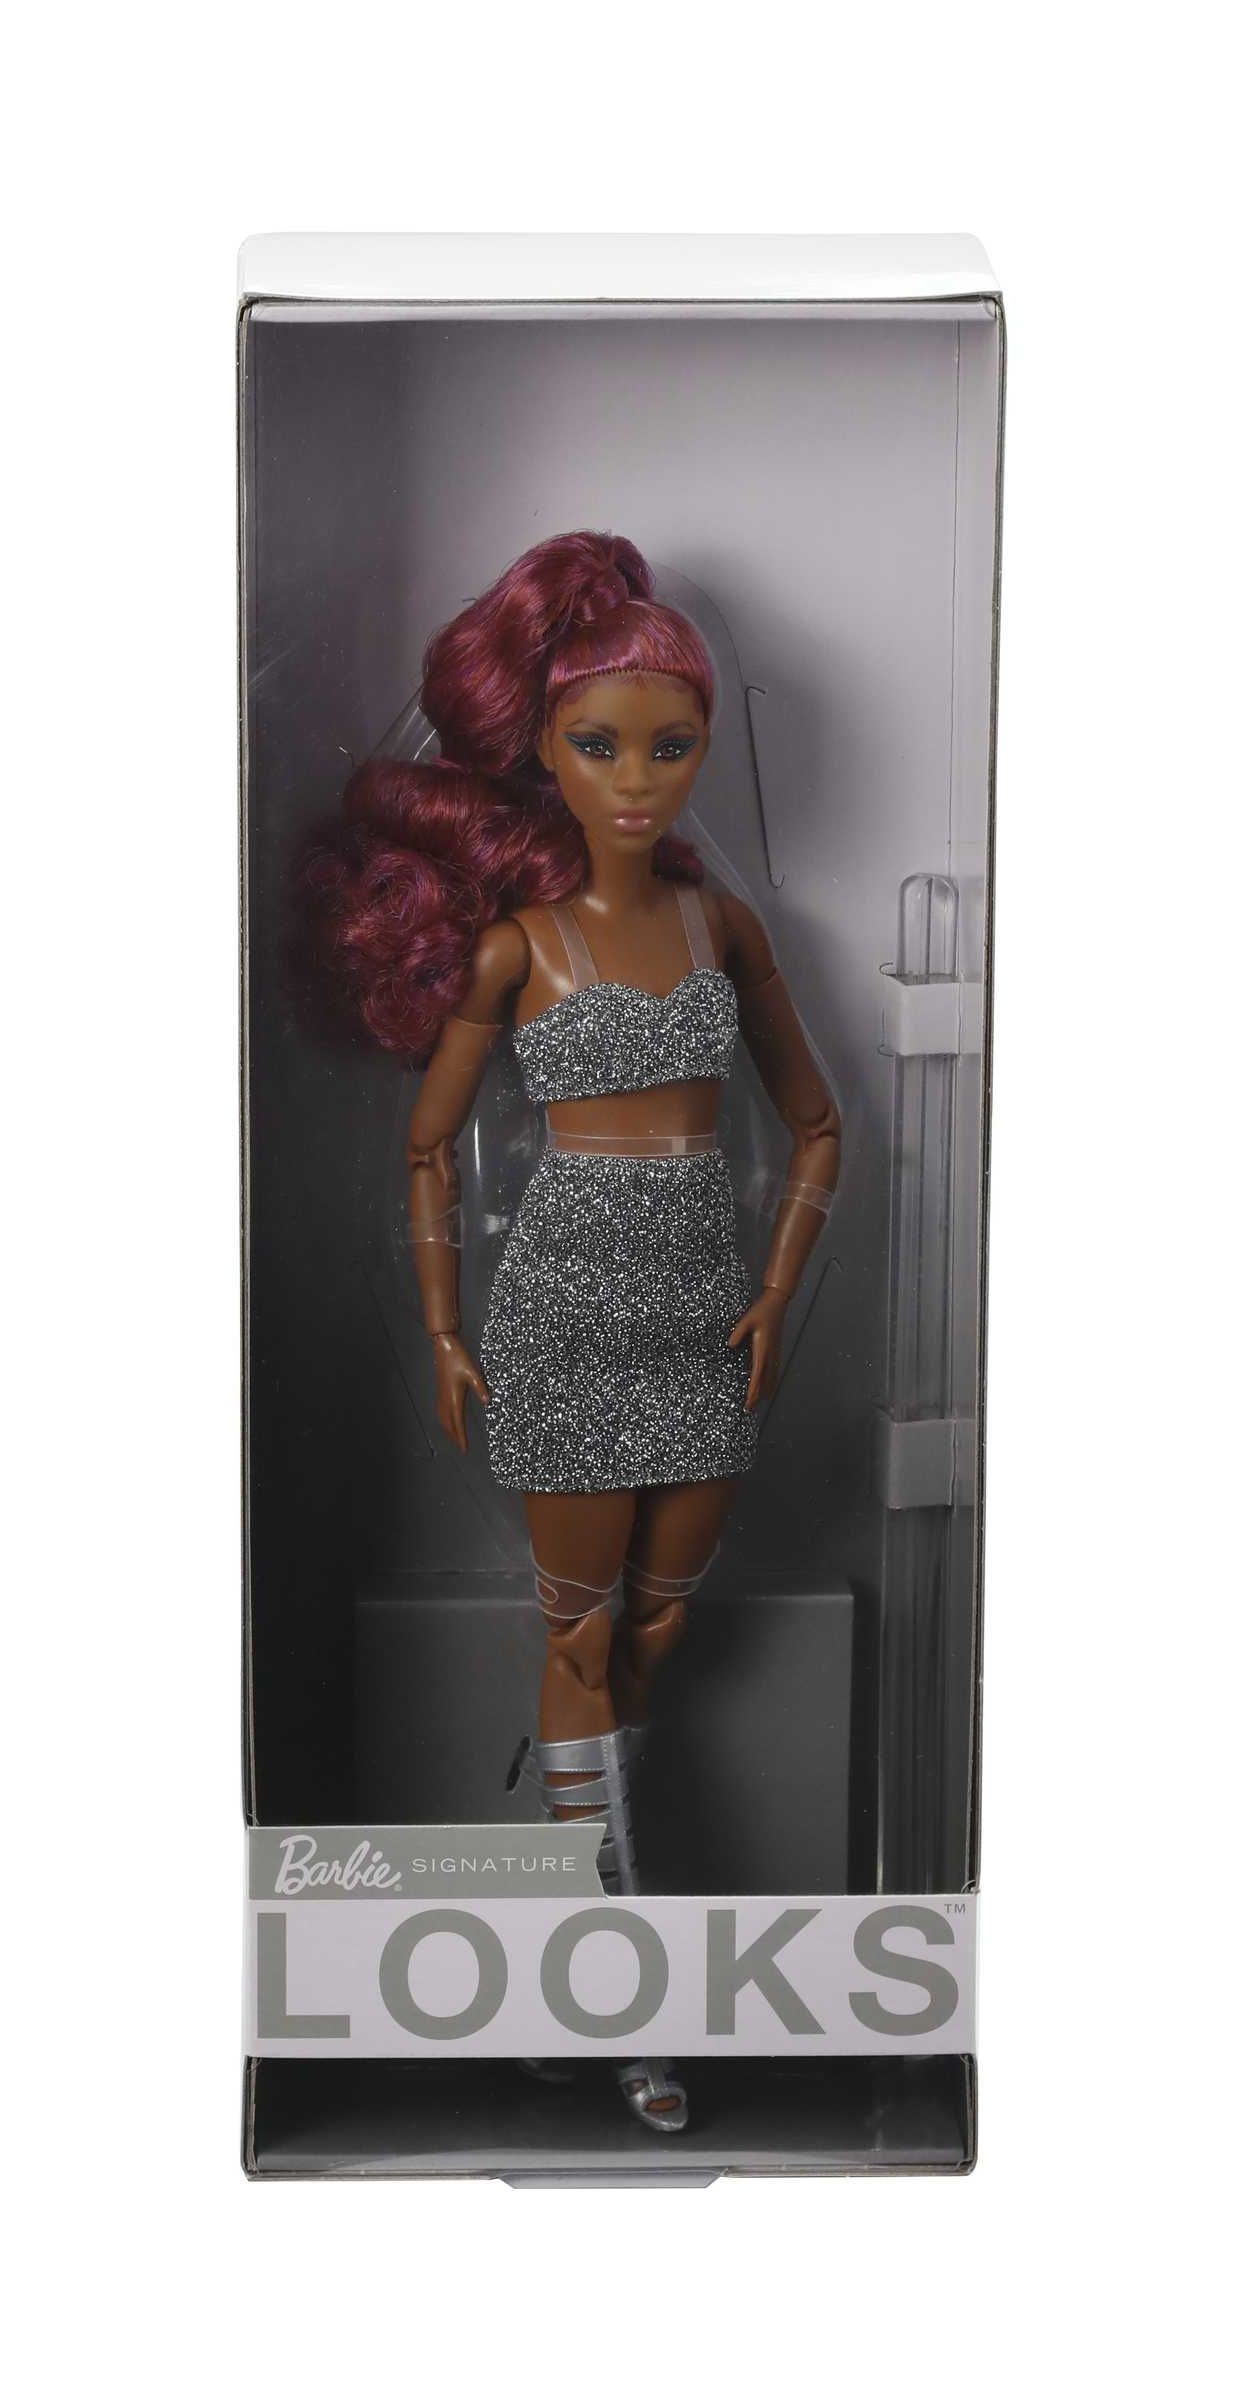 Barbie, bambola signature barbie looks bionda, snodata, con crop top, gonna tubino argenta e capelli corti biondi, giocattolo per bambini 6+ anni, hcb77 - Barbie